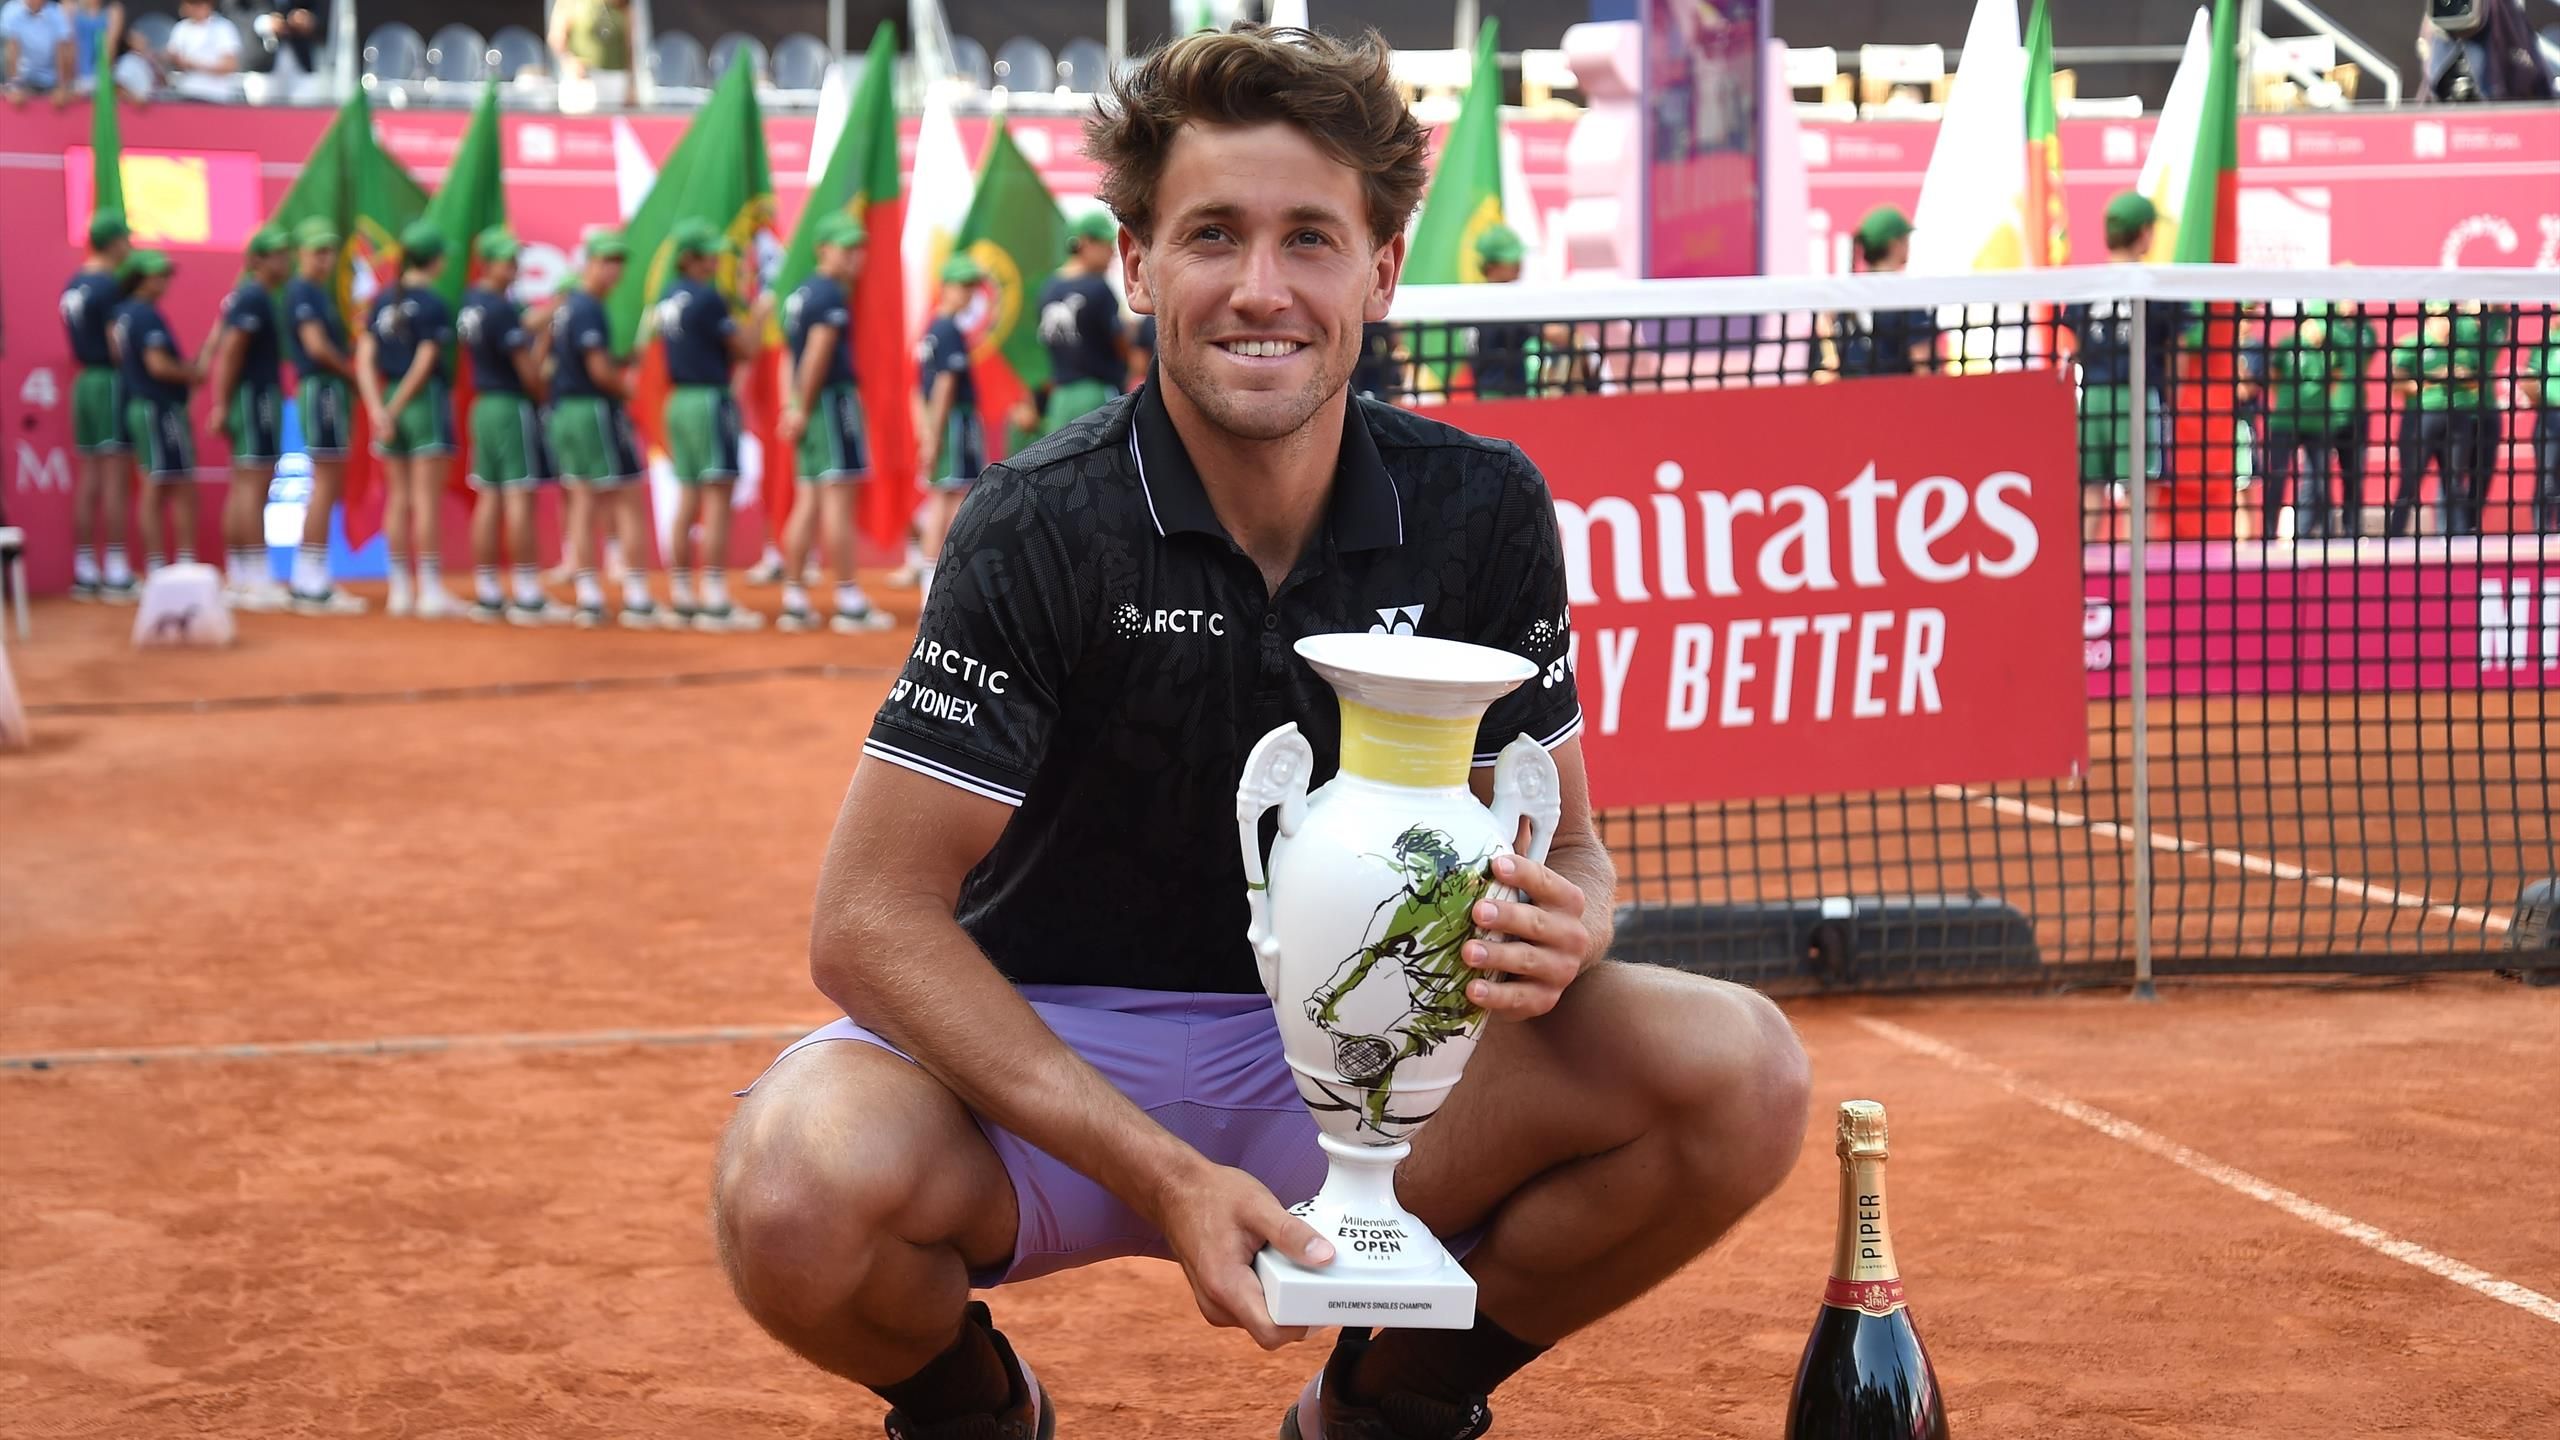 Erster Saisontitel perfekt Casper Ruud gewinnt Finale in Estoril gegen Miomir Kecmanovic - Tennis Video